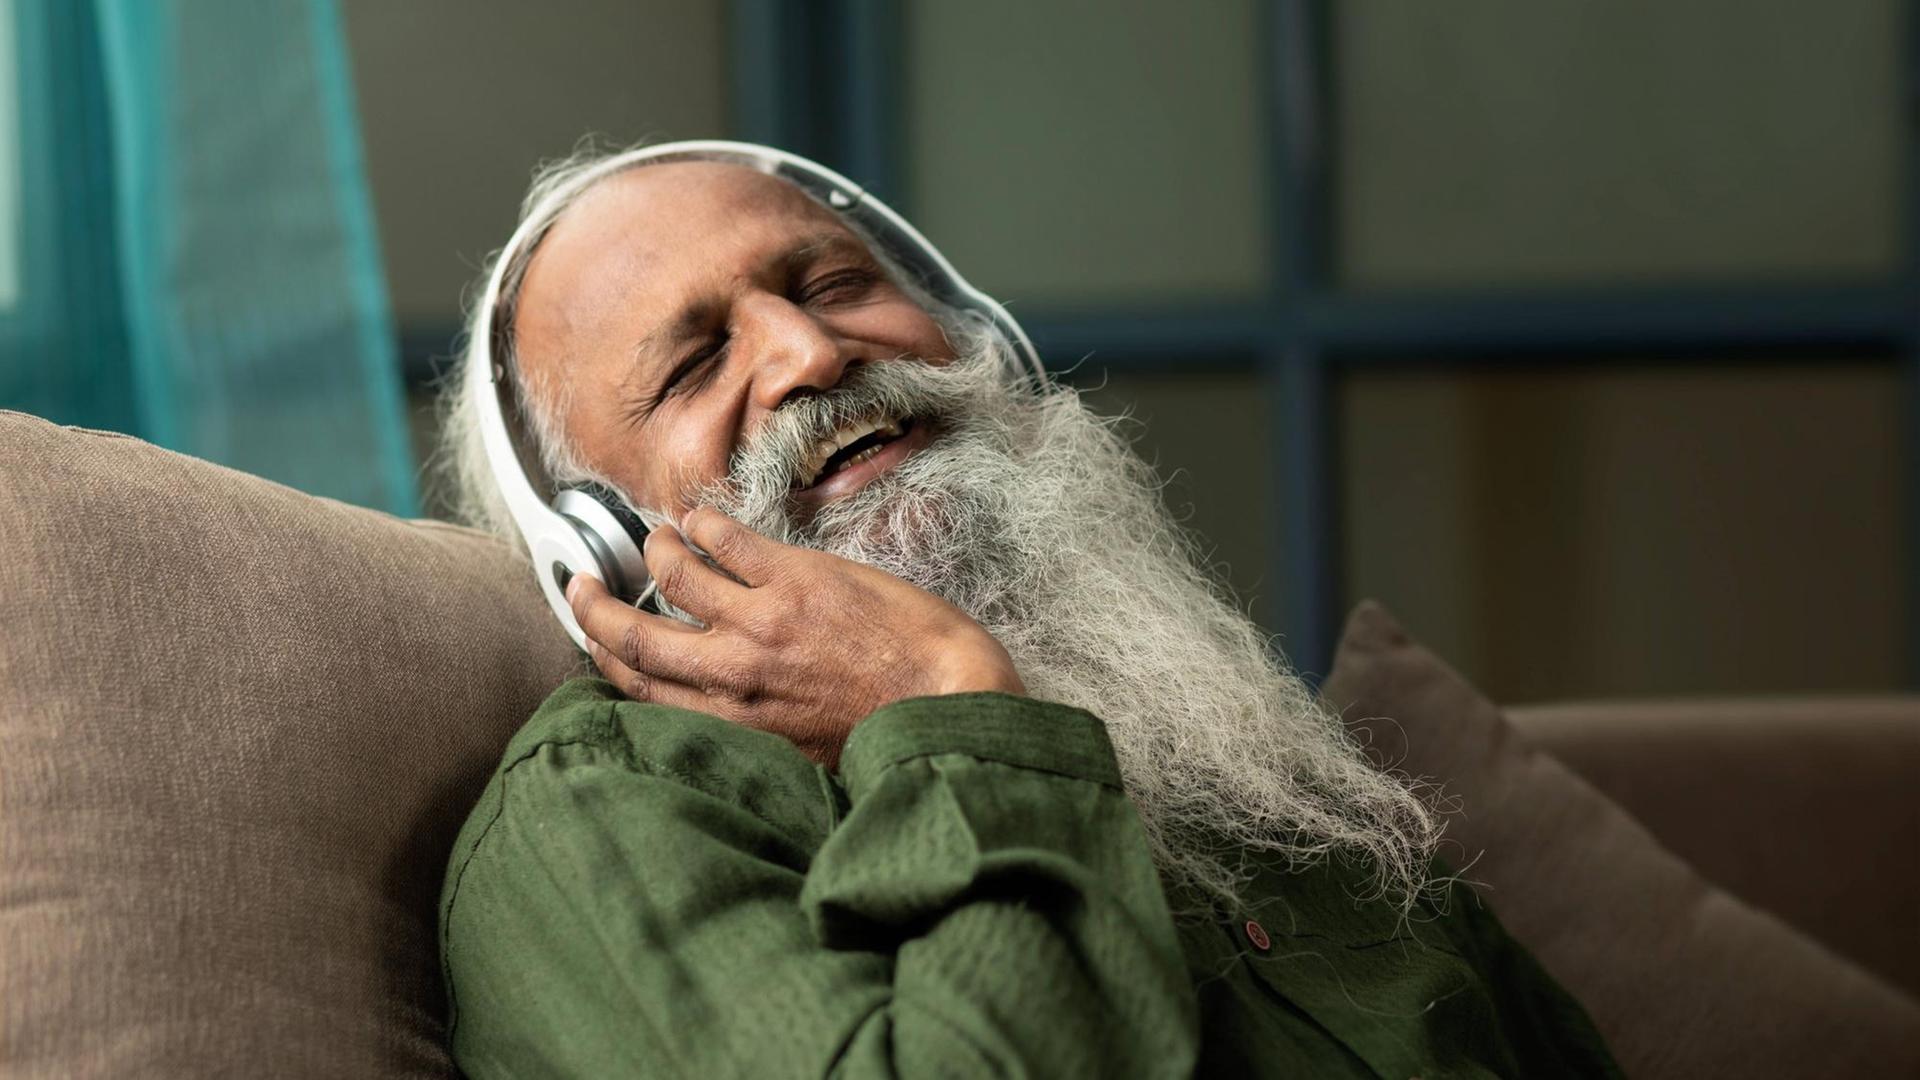 Ein Mann mit weißem Bart hört lachend und glücklich etwas über Kopfhörer.